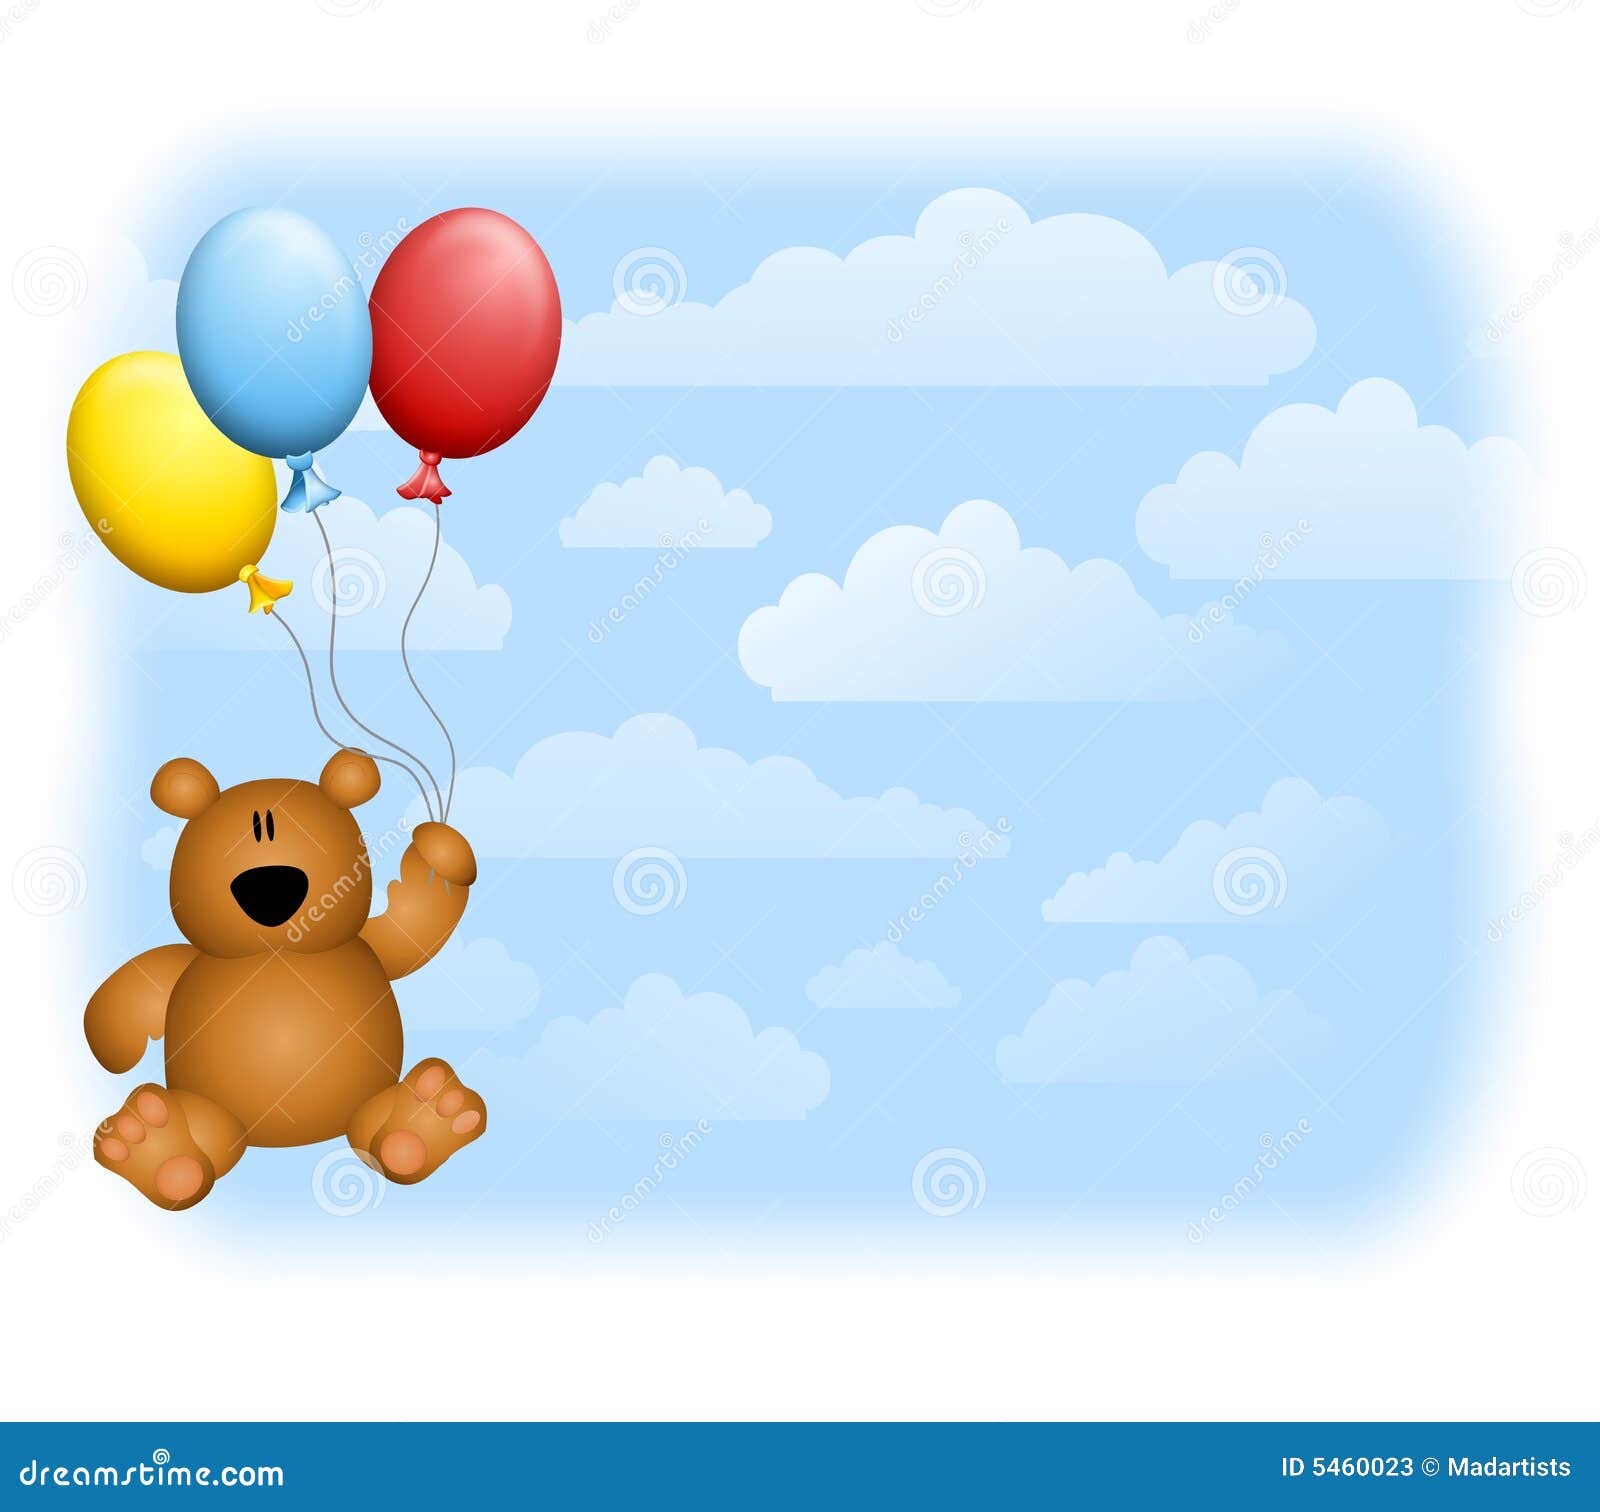 teddy bear holding balloons clipart - photo #37